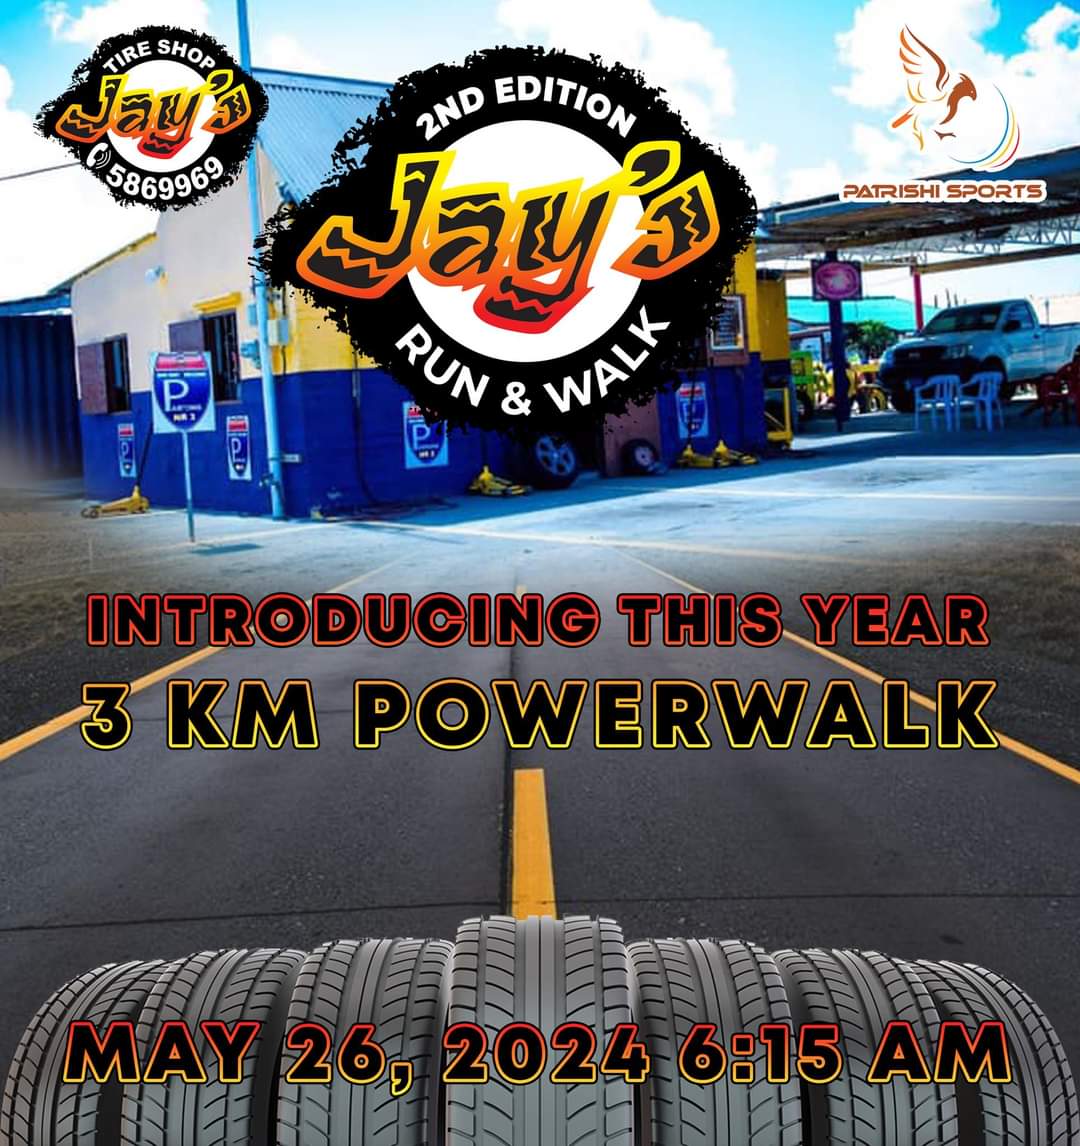 Jay's 2nd Edition Run & Walk